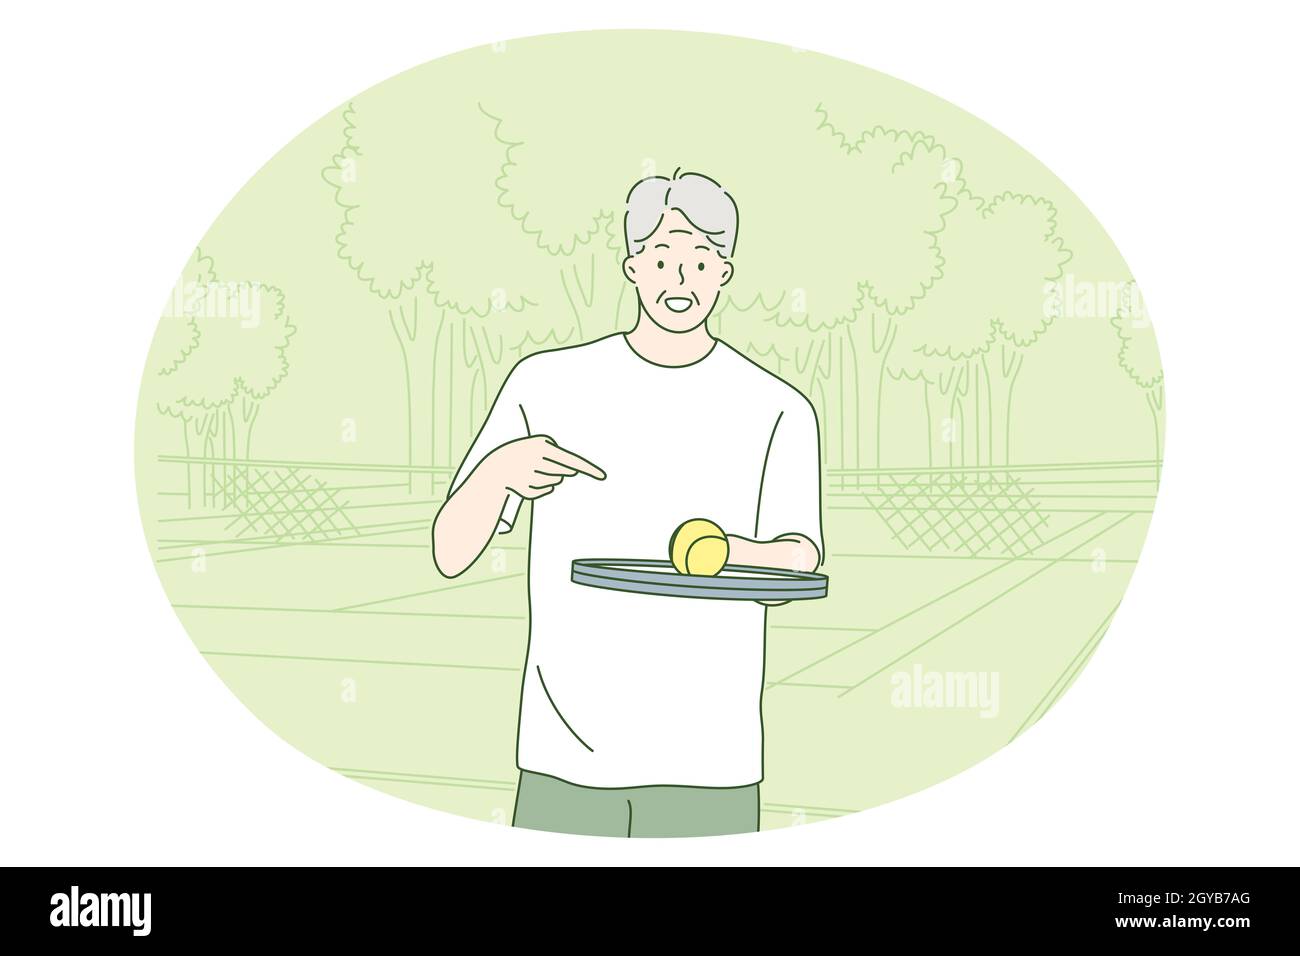 Sport, mode de vie actif sain, concept de loisir.Personnage de dessin animé homme souriant senior jouant au tennis dans le parc sur l'illustration estivale.R Banque D'Images